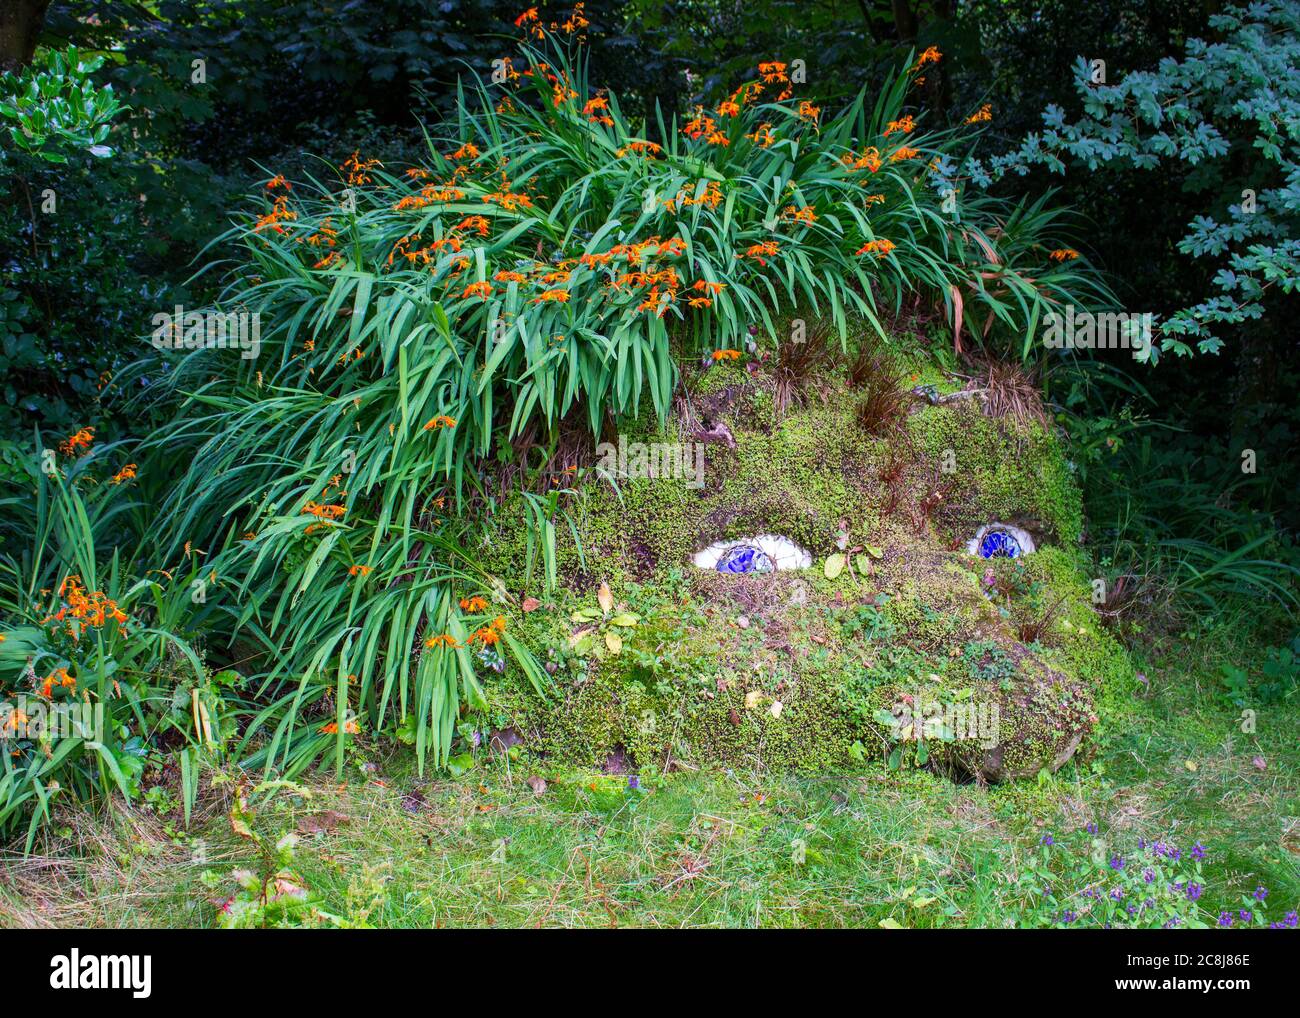 Der Riese der verlorenen Gärten von Heligan. Stockfoto